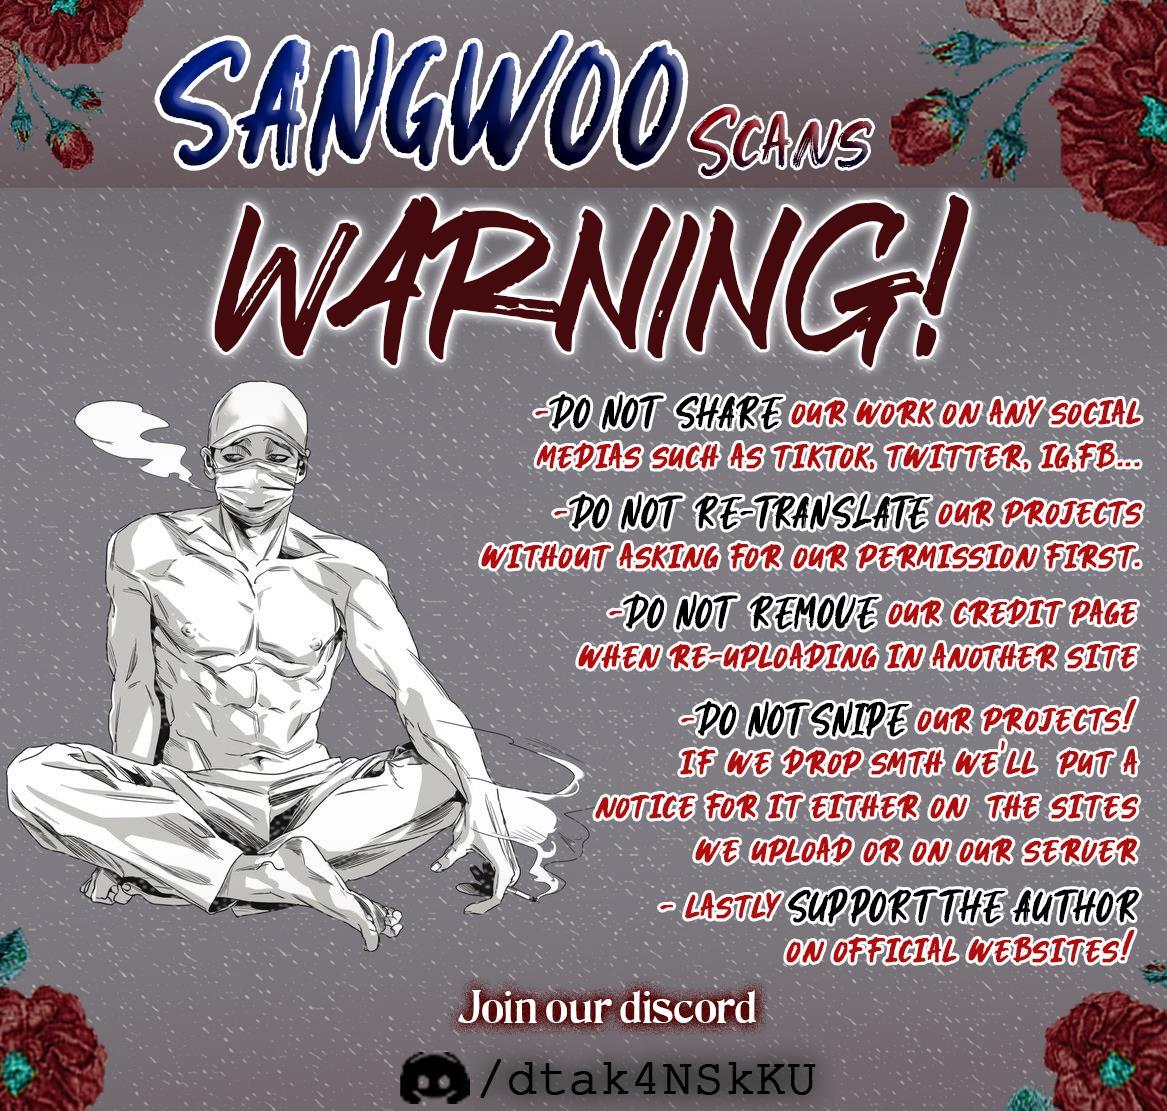 Sangwoo scans